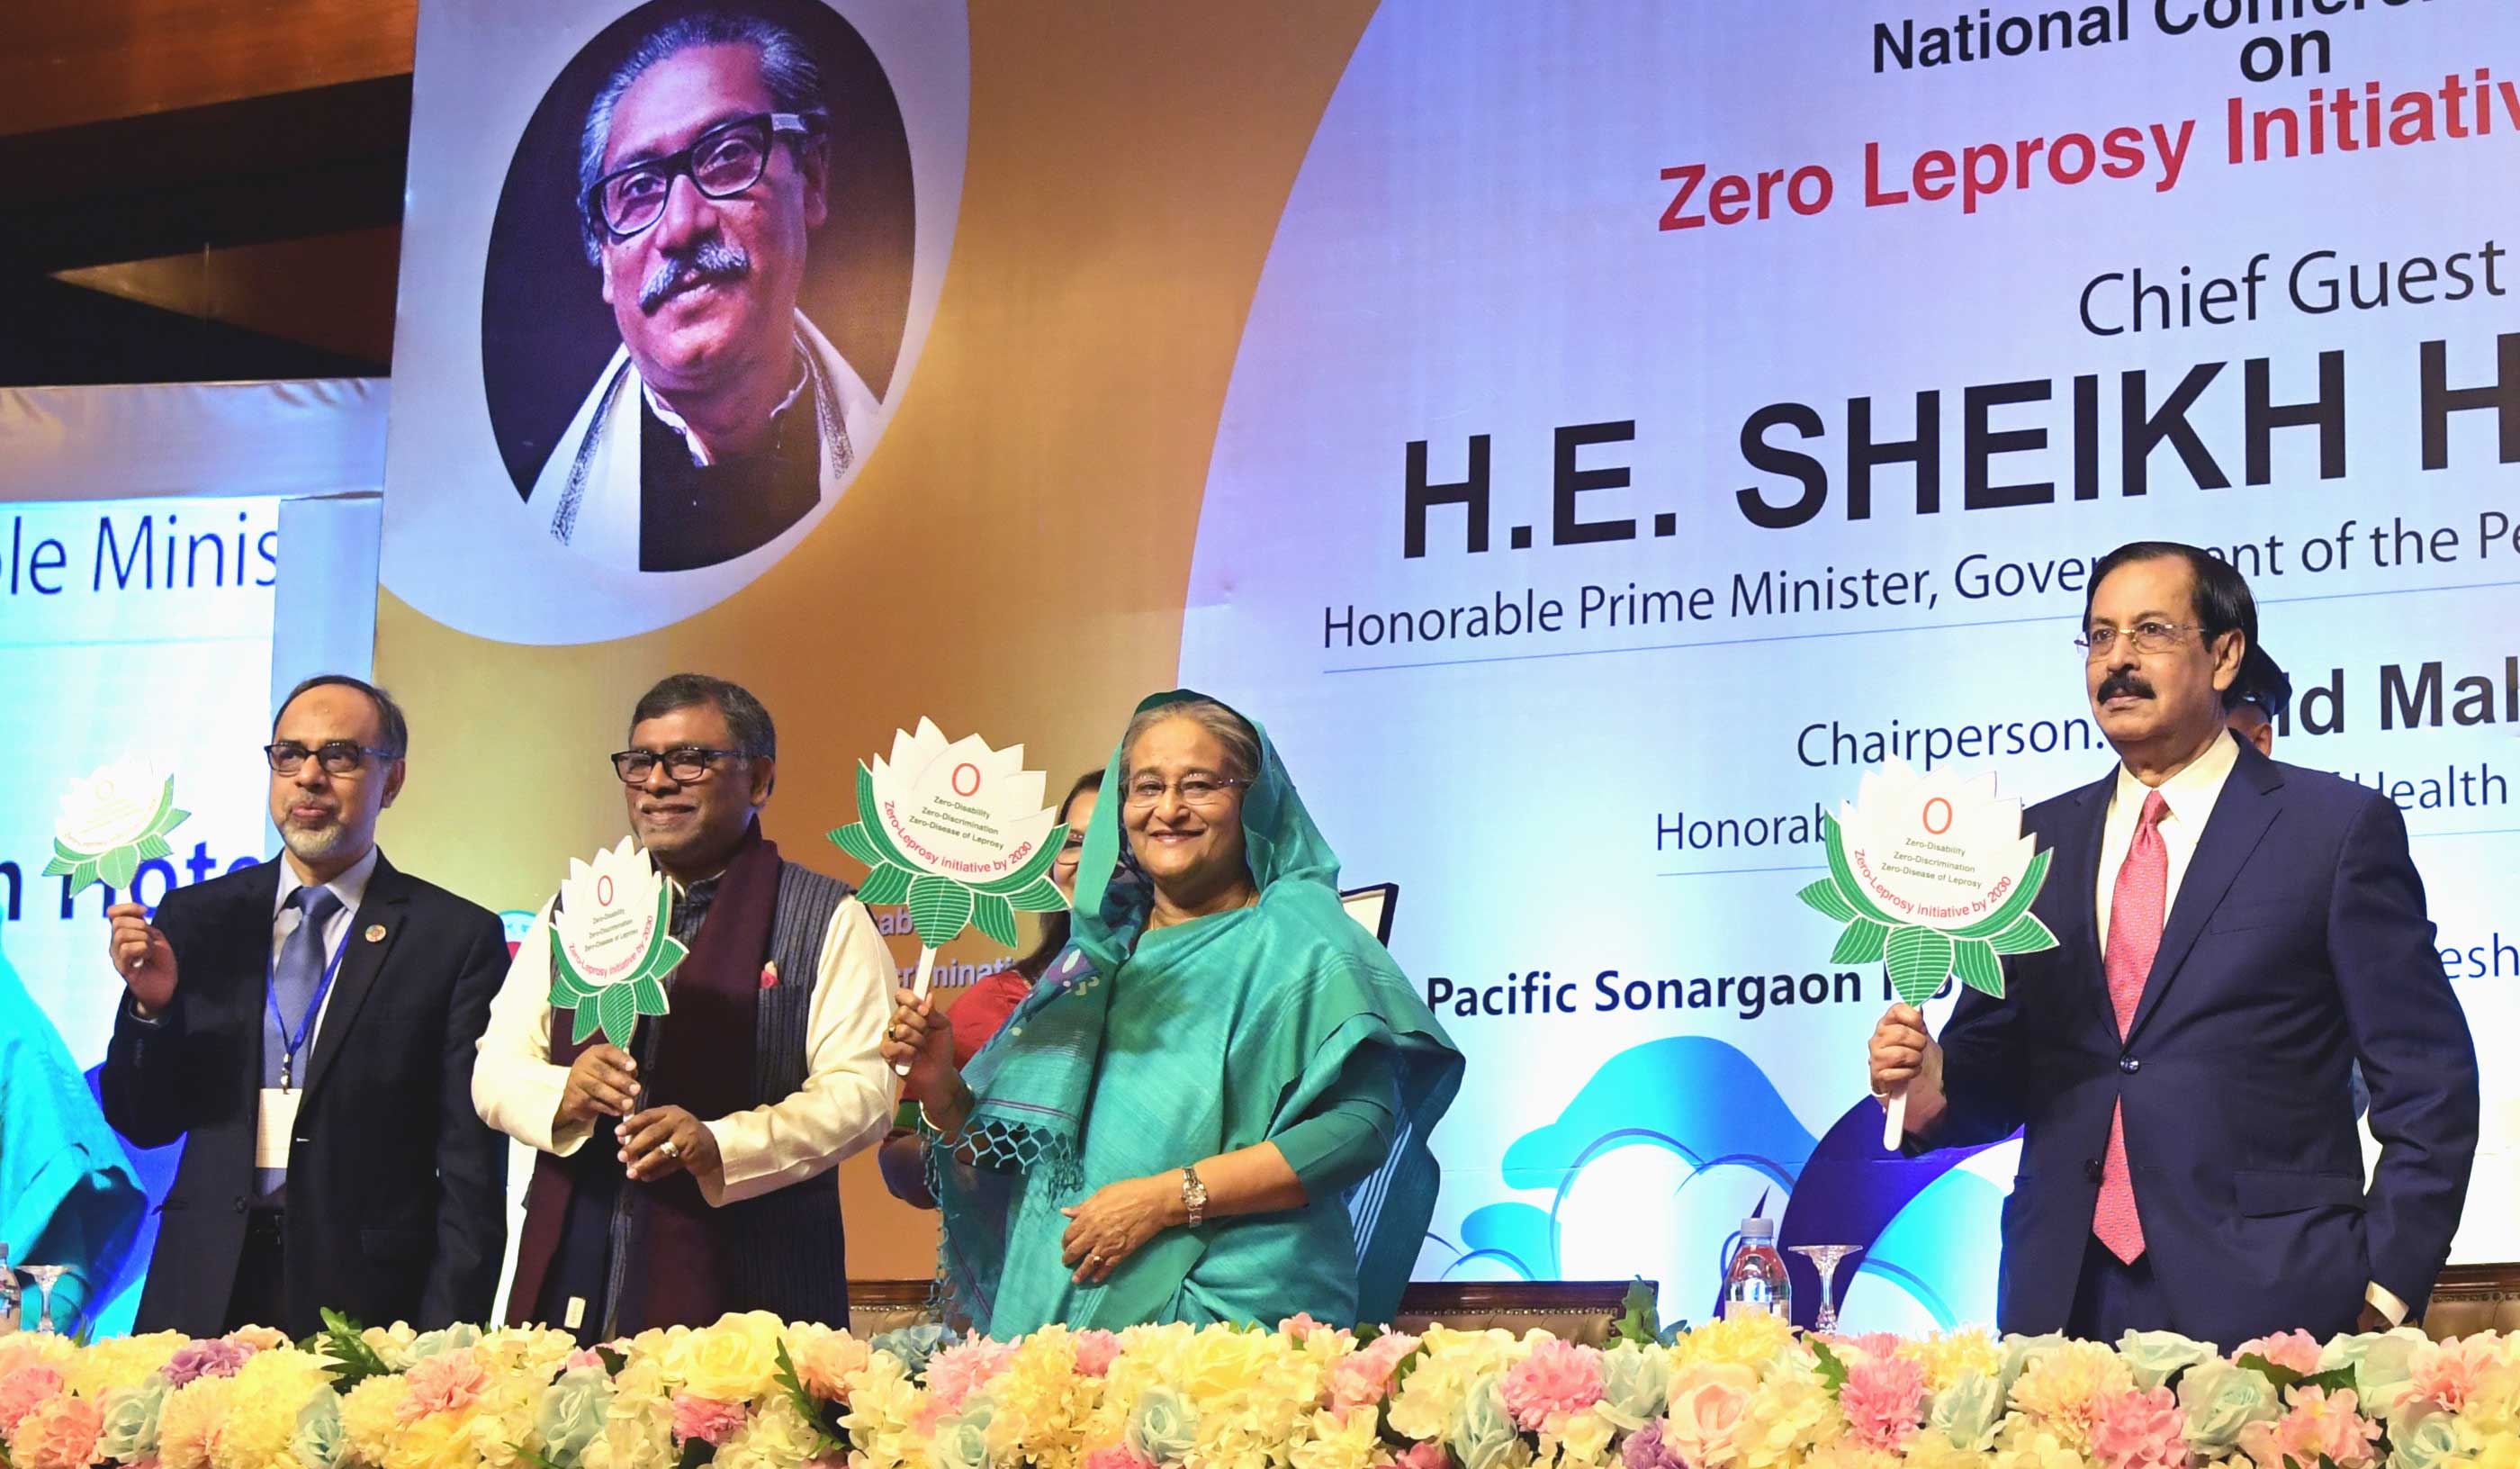 প্রধানমন্ত্রী শেখ হাসিনা ঢাকায় হোটেল সোনারগাঁওয়ে ‘Zero Leprosy Initiative by 2030’ শীর্ষক জাতীয় সম্মেলন-২০১৯ এর উদ্বোধন অনুষ্ঠানে প্রধান অতিথির বক্তৃতা করেন